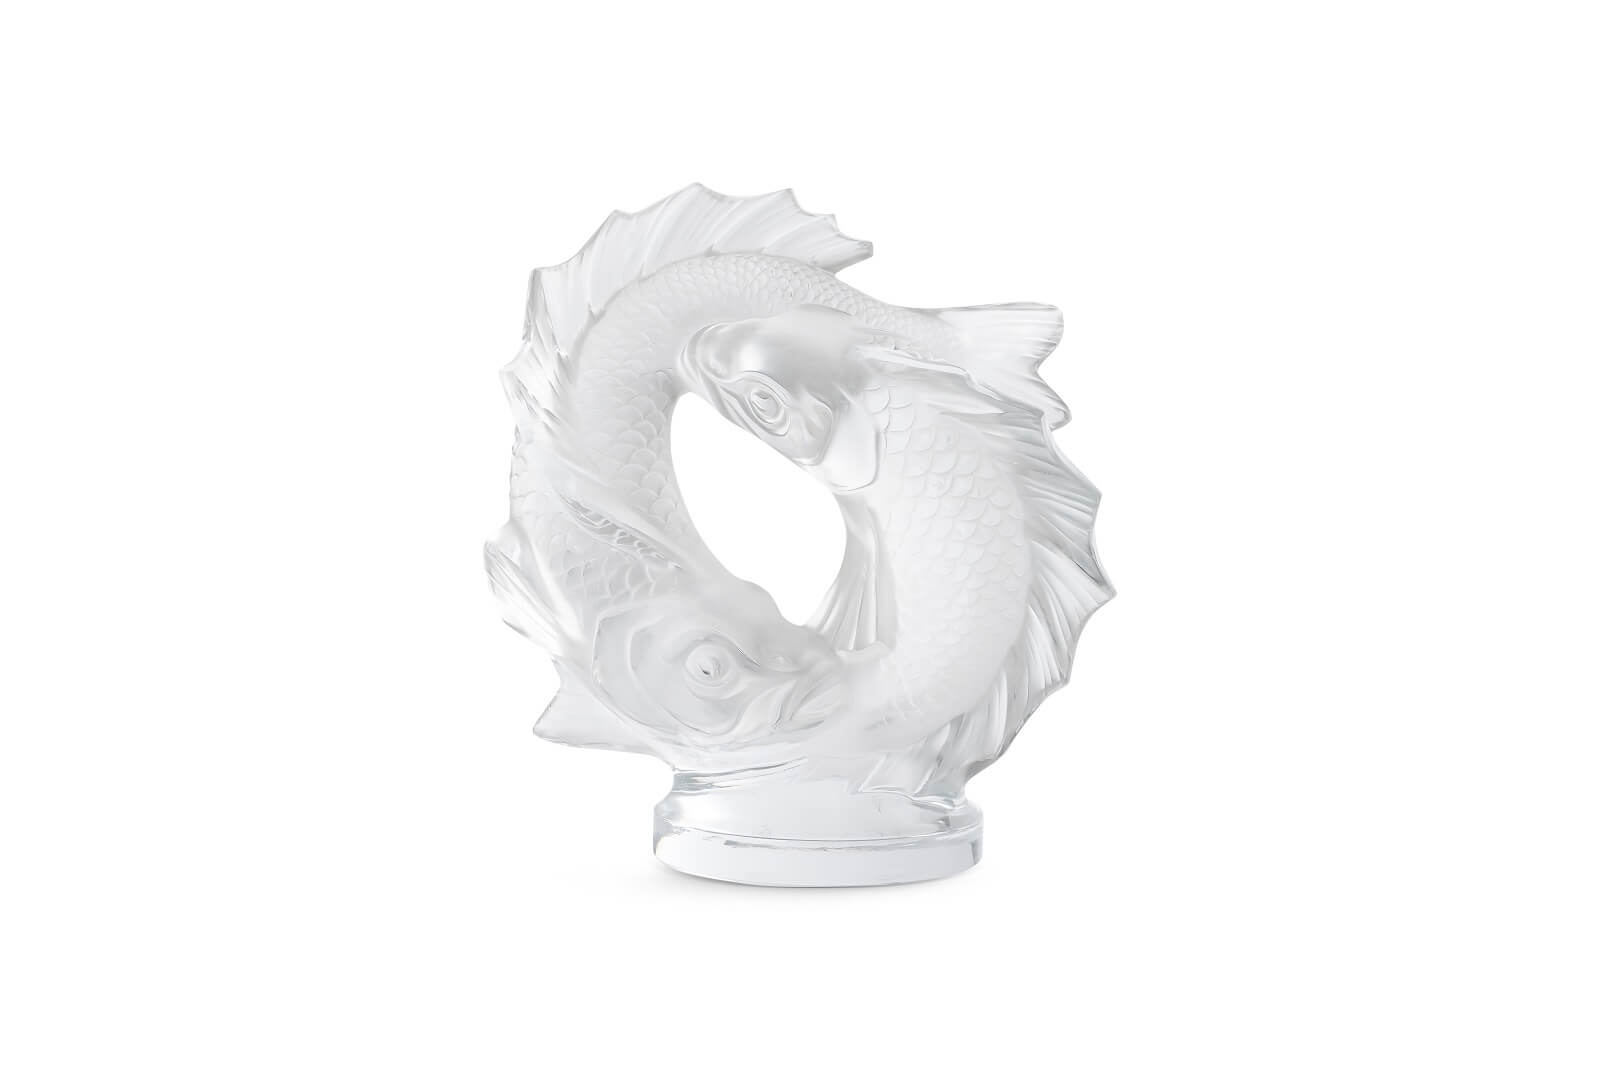 Статуэтка «Double fish», Lalique - продажа в Москве